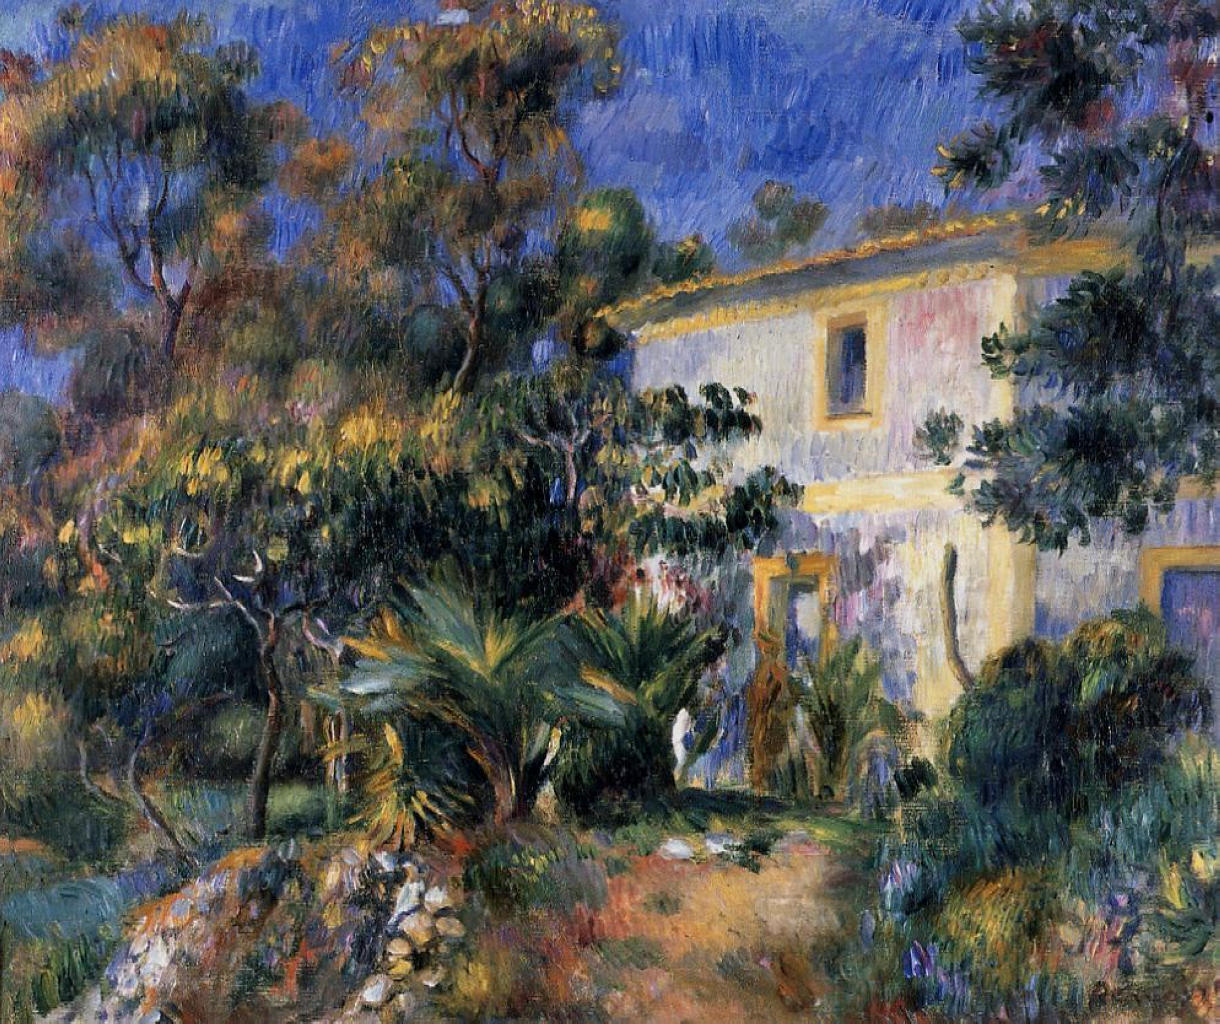 Algiers Landscape - Pierre-Auguste Renoir painting on canvas